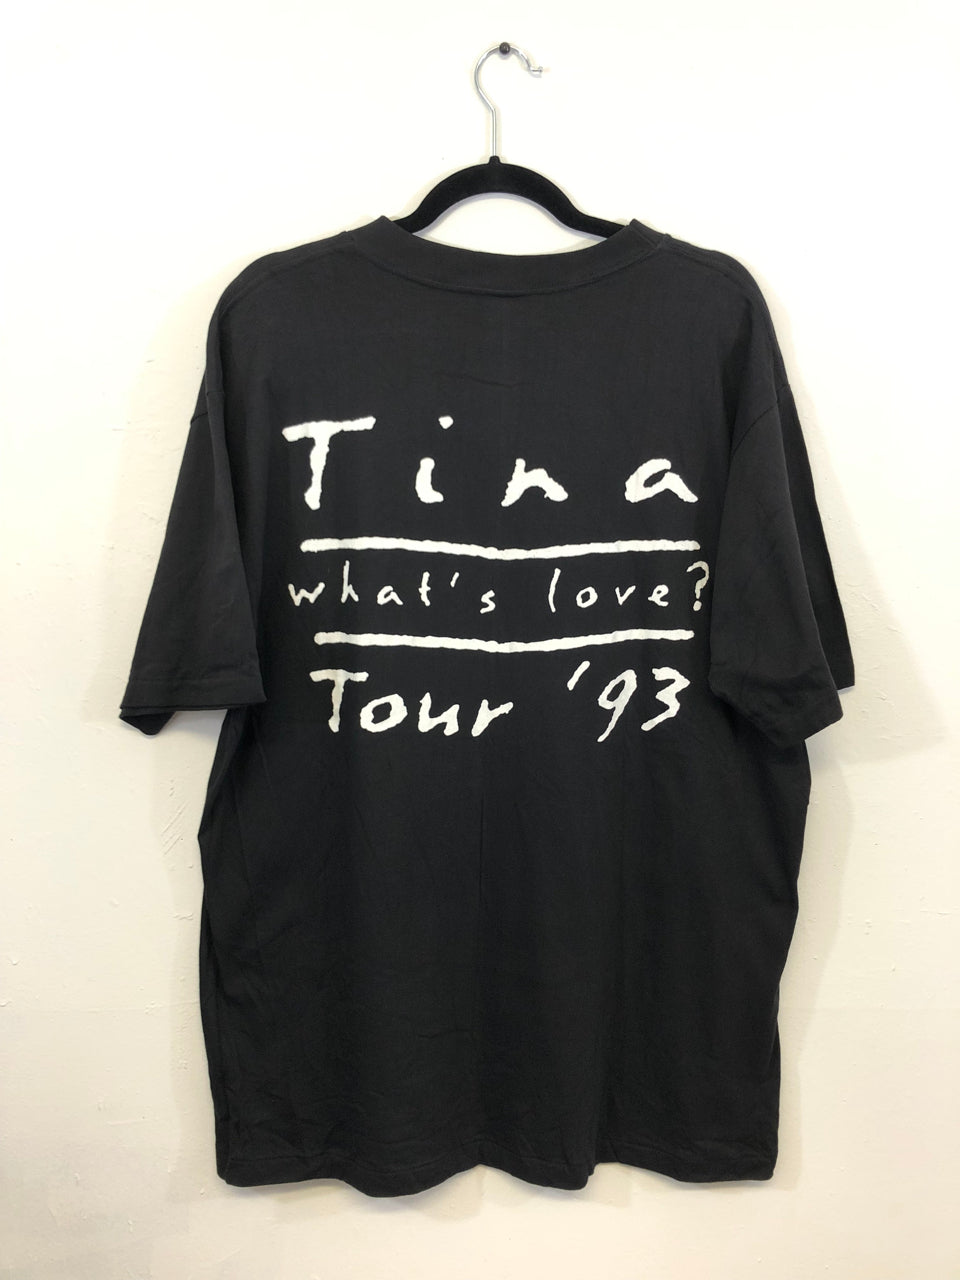 Tina Turner Tour '93 Local Crew T-Shirt